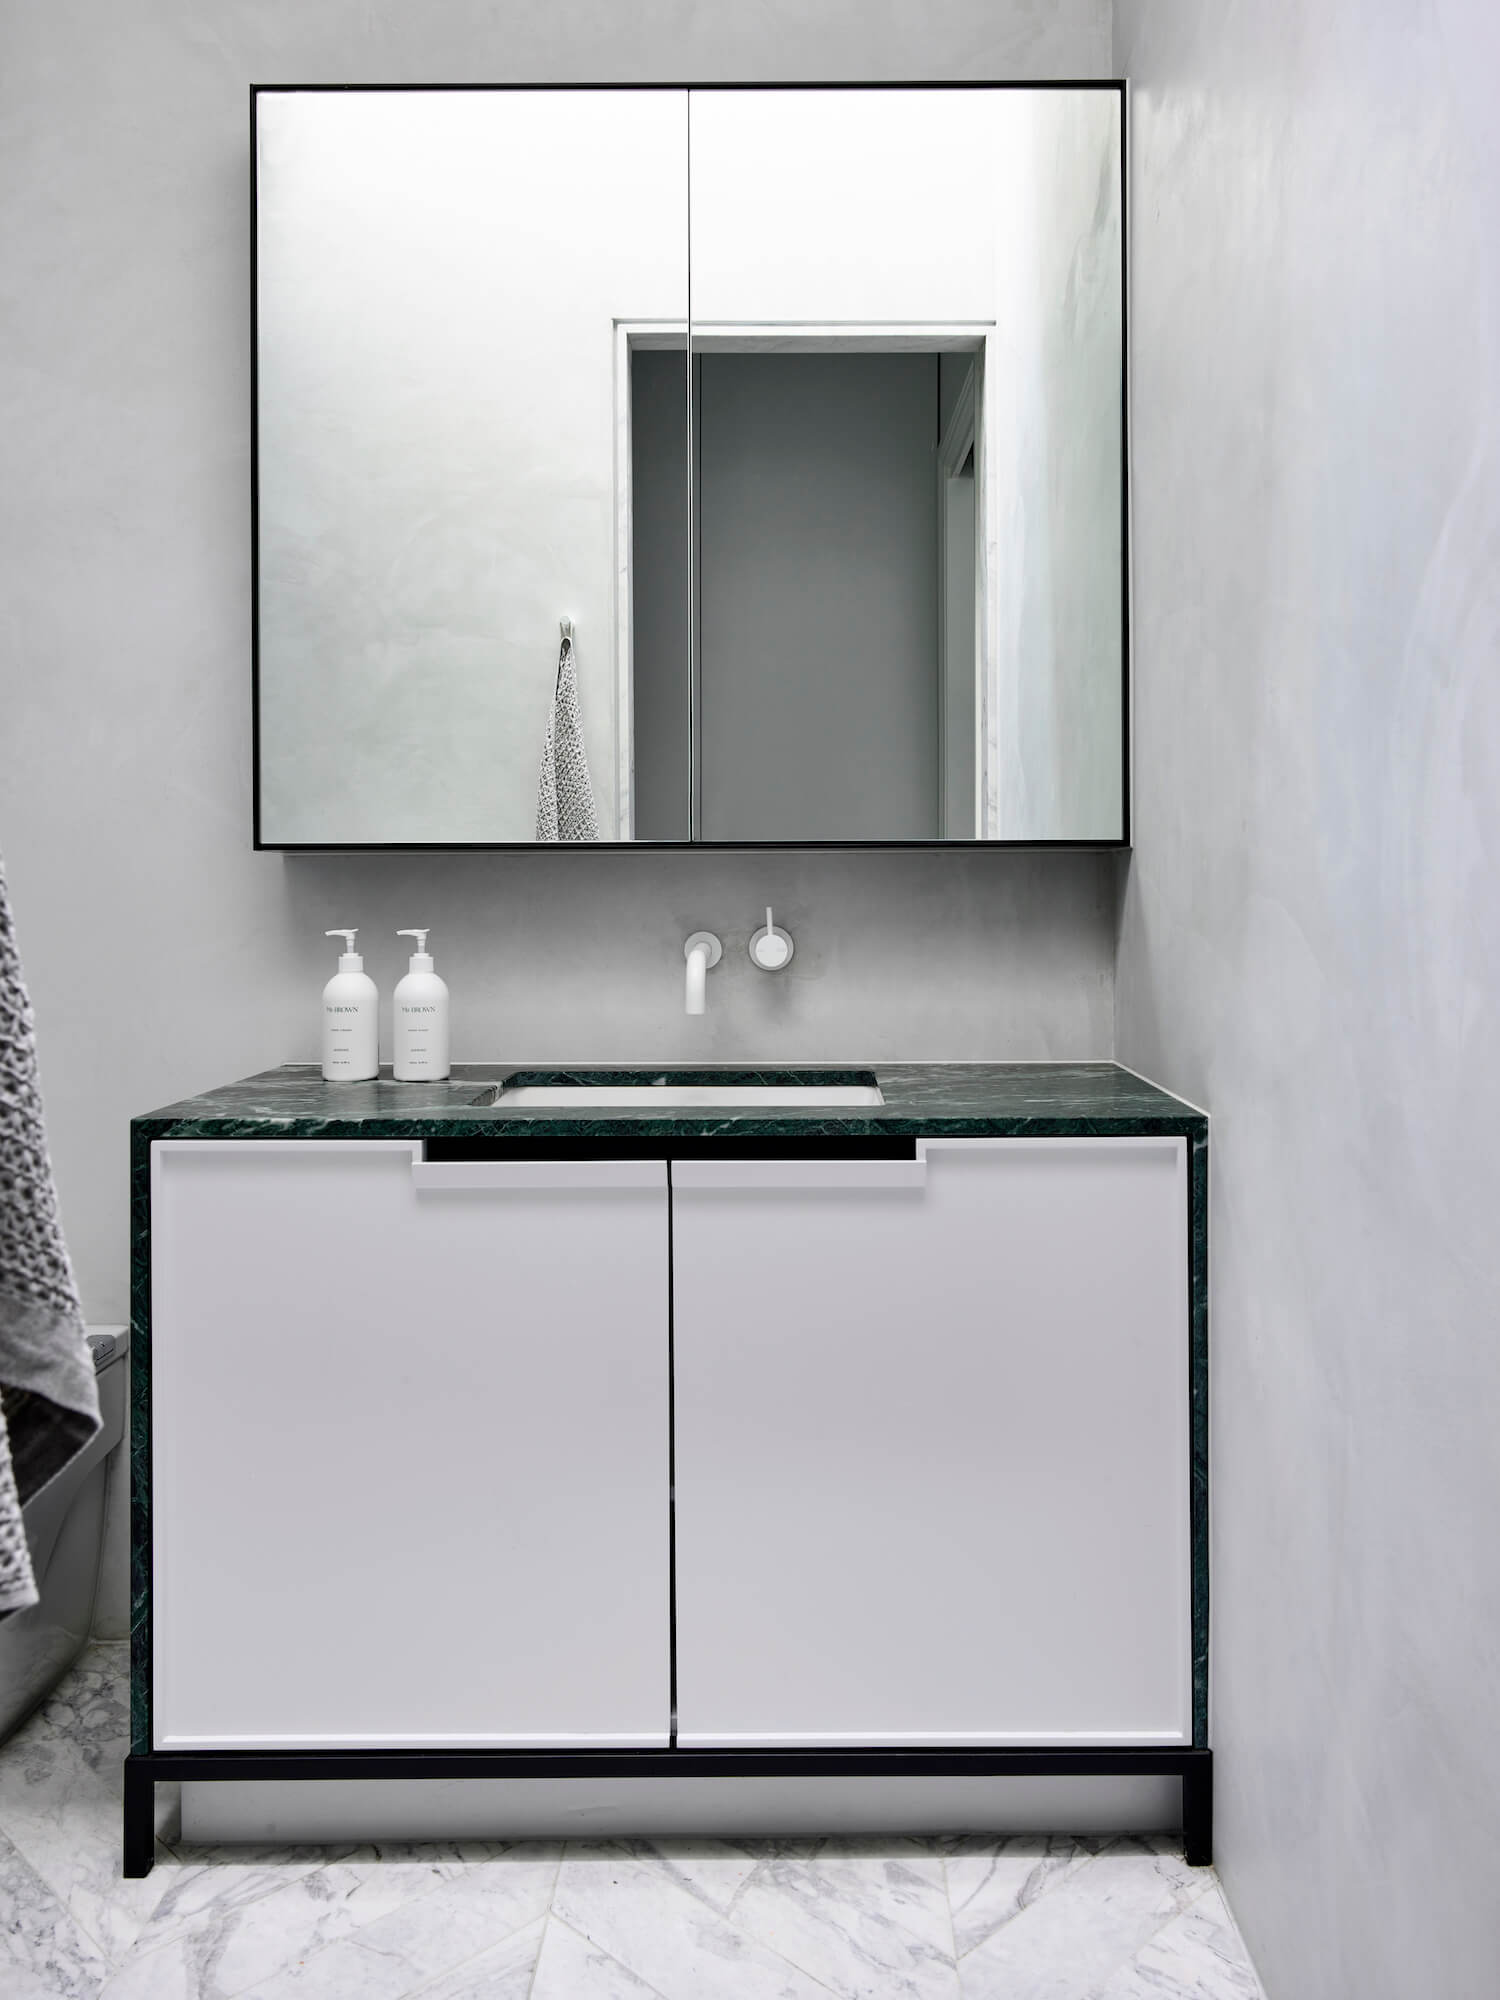 Snyggt badrum med tadelakt, grön marmor som detalj och vit marmor i chevron på golvet.